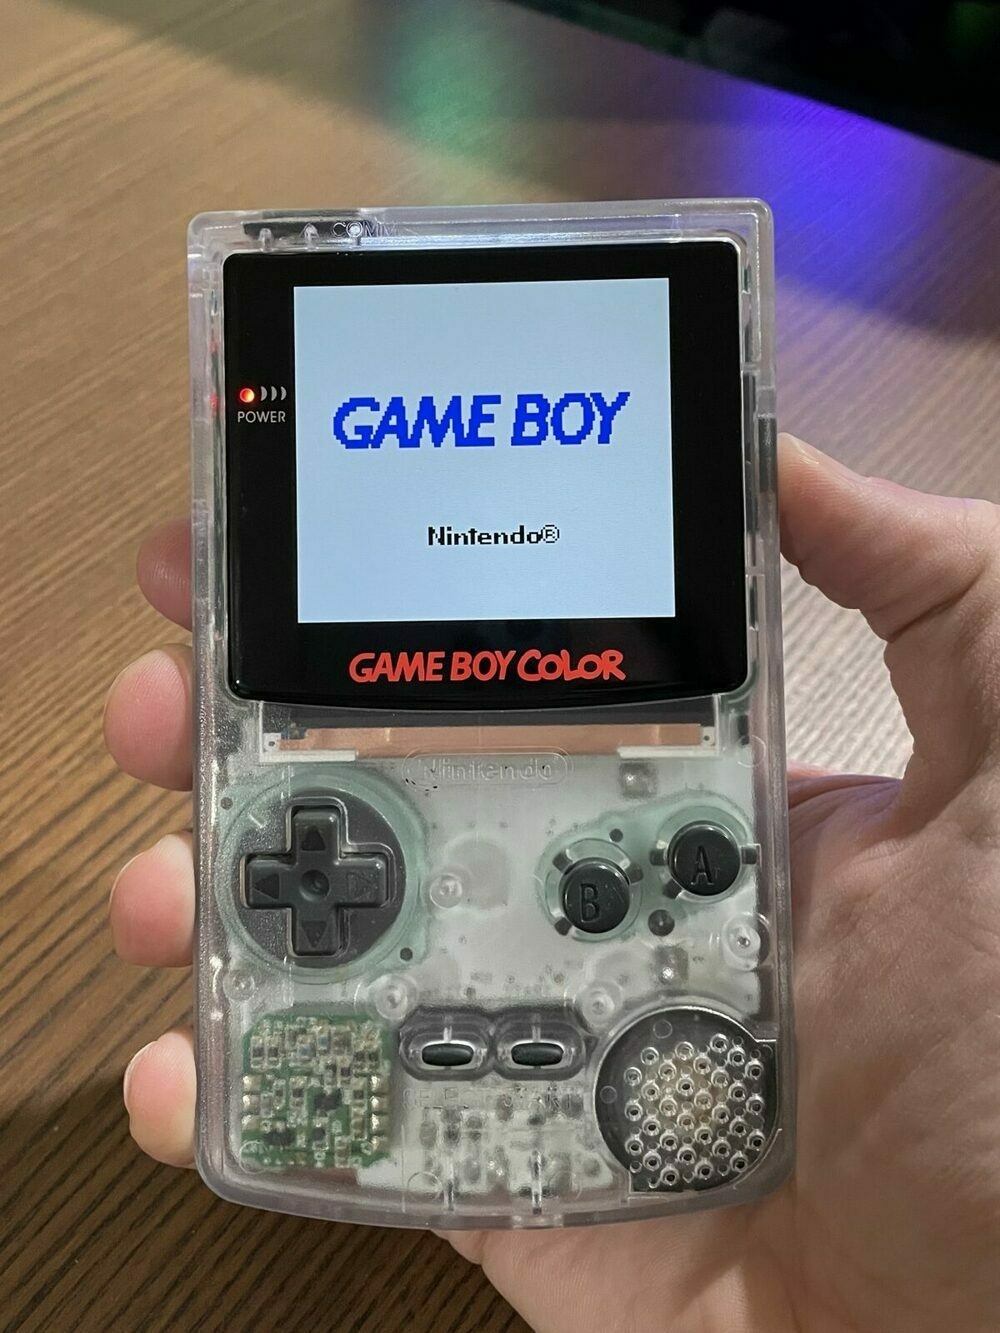 Backlit GameBoy Color boot screen